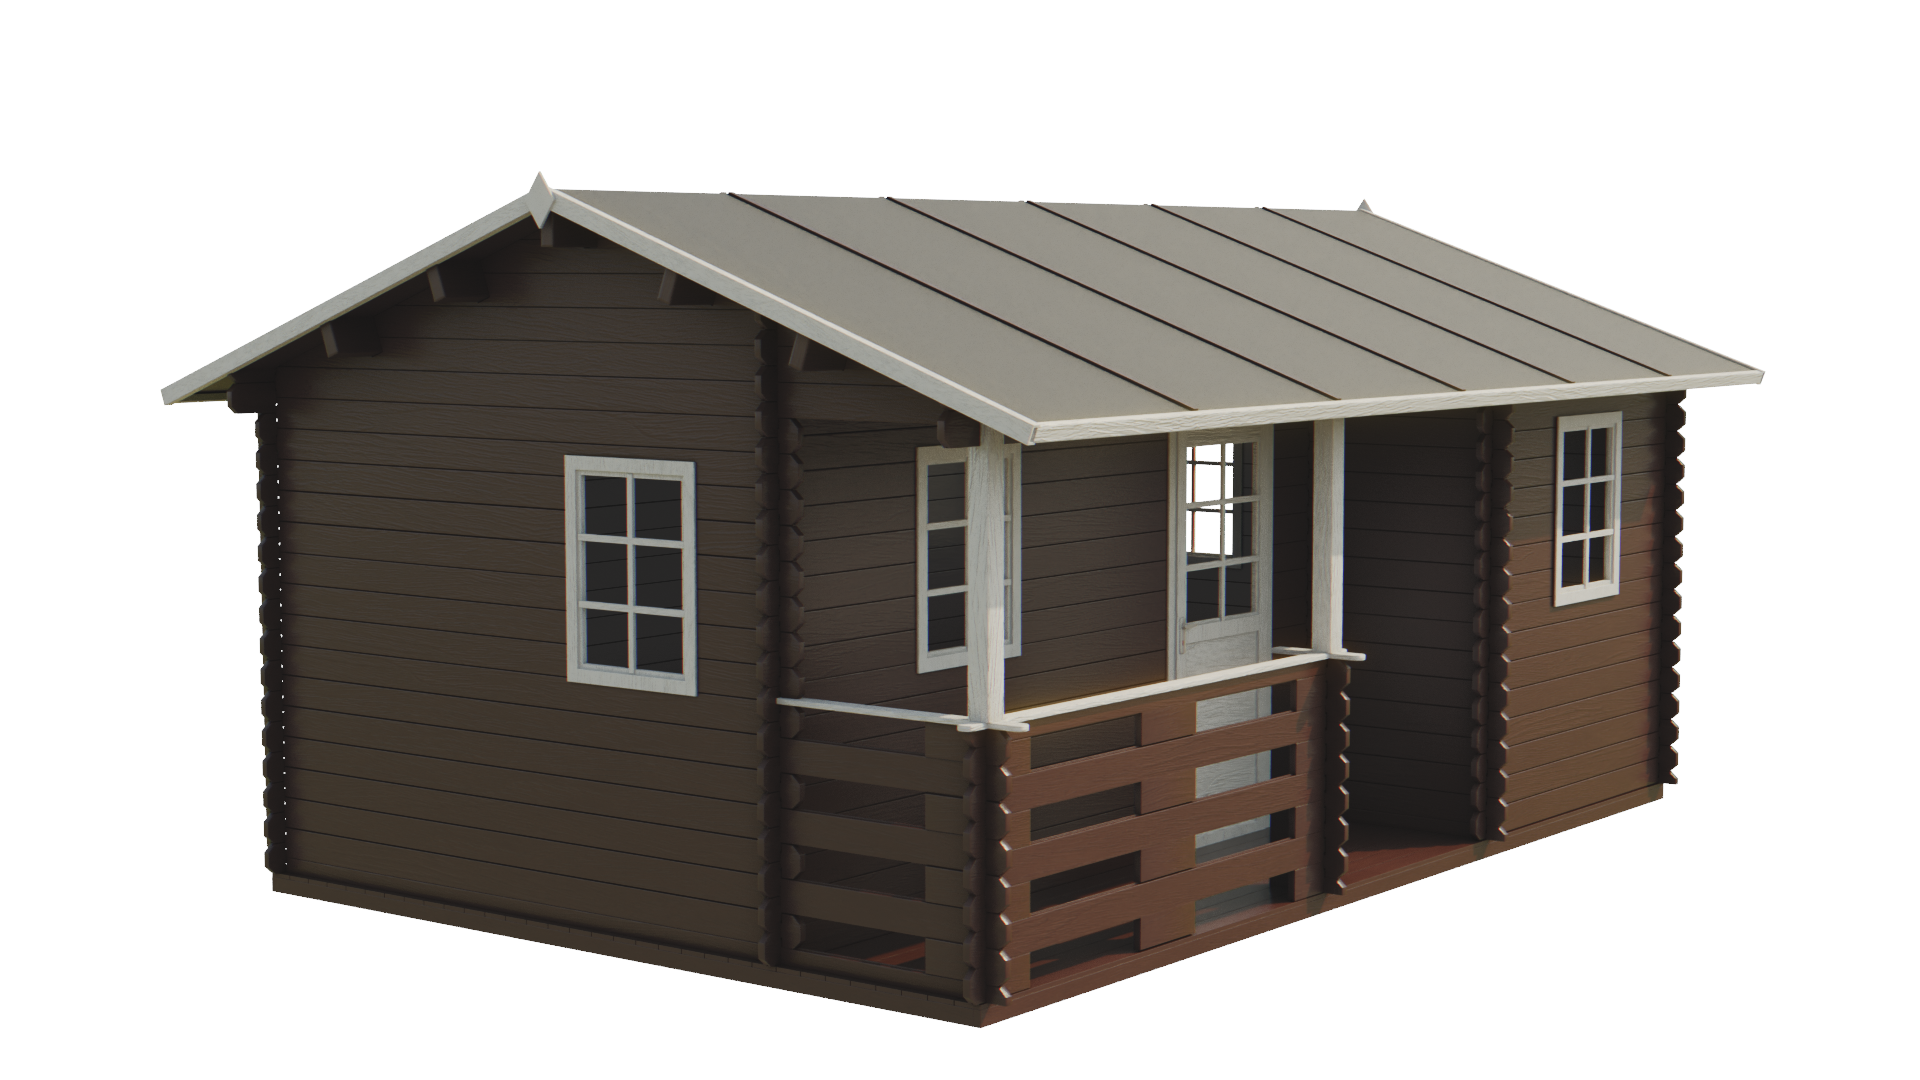 Zahradní dřevěný domek roubený PALPLOMA 6,5 x 4,5m s verandou 4m2 